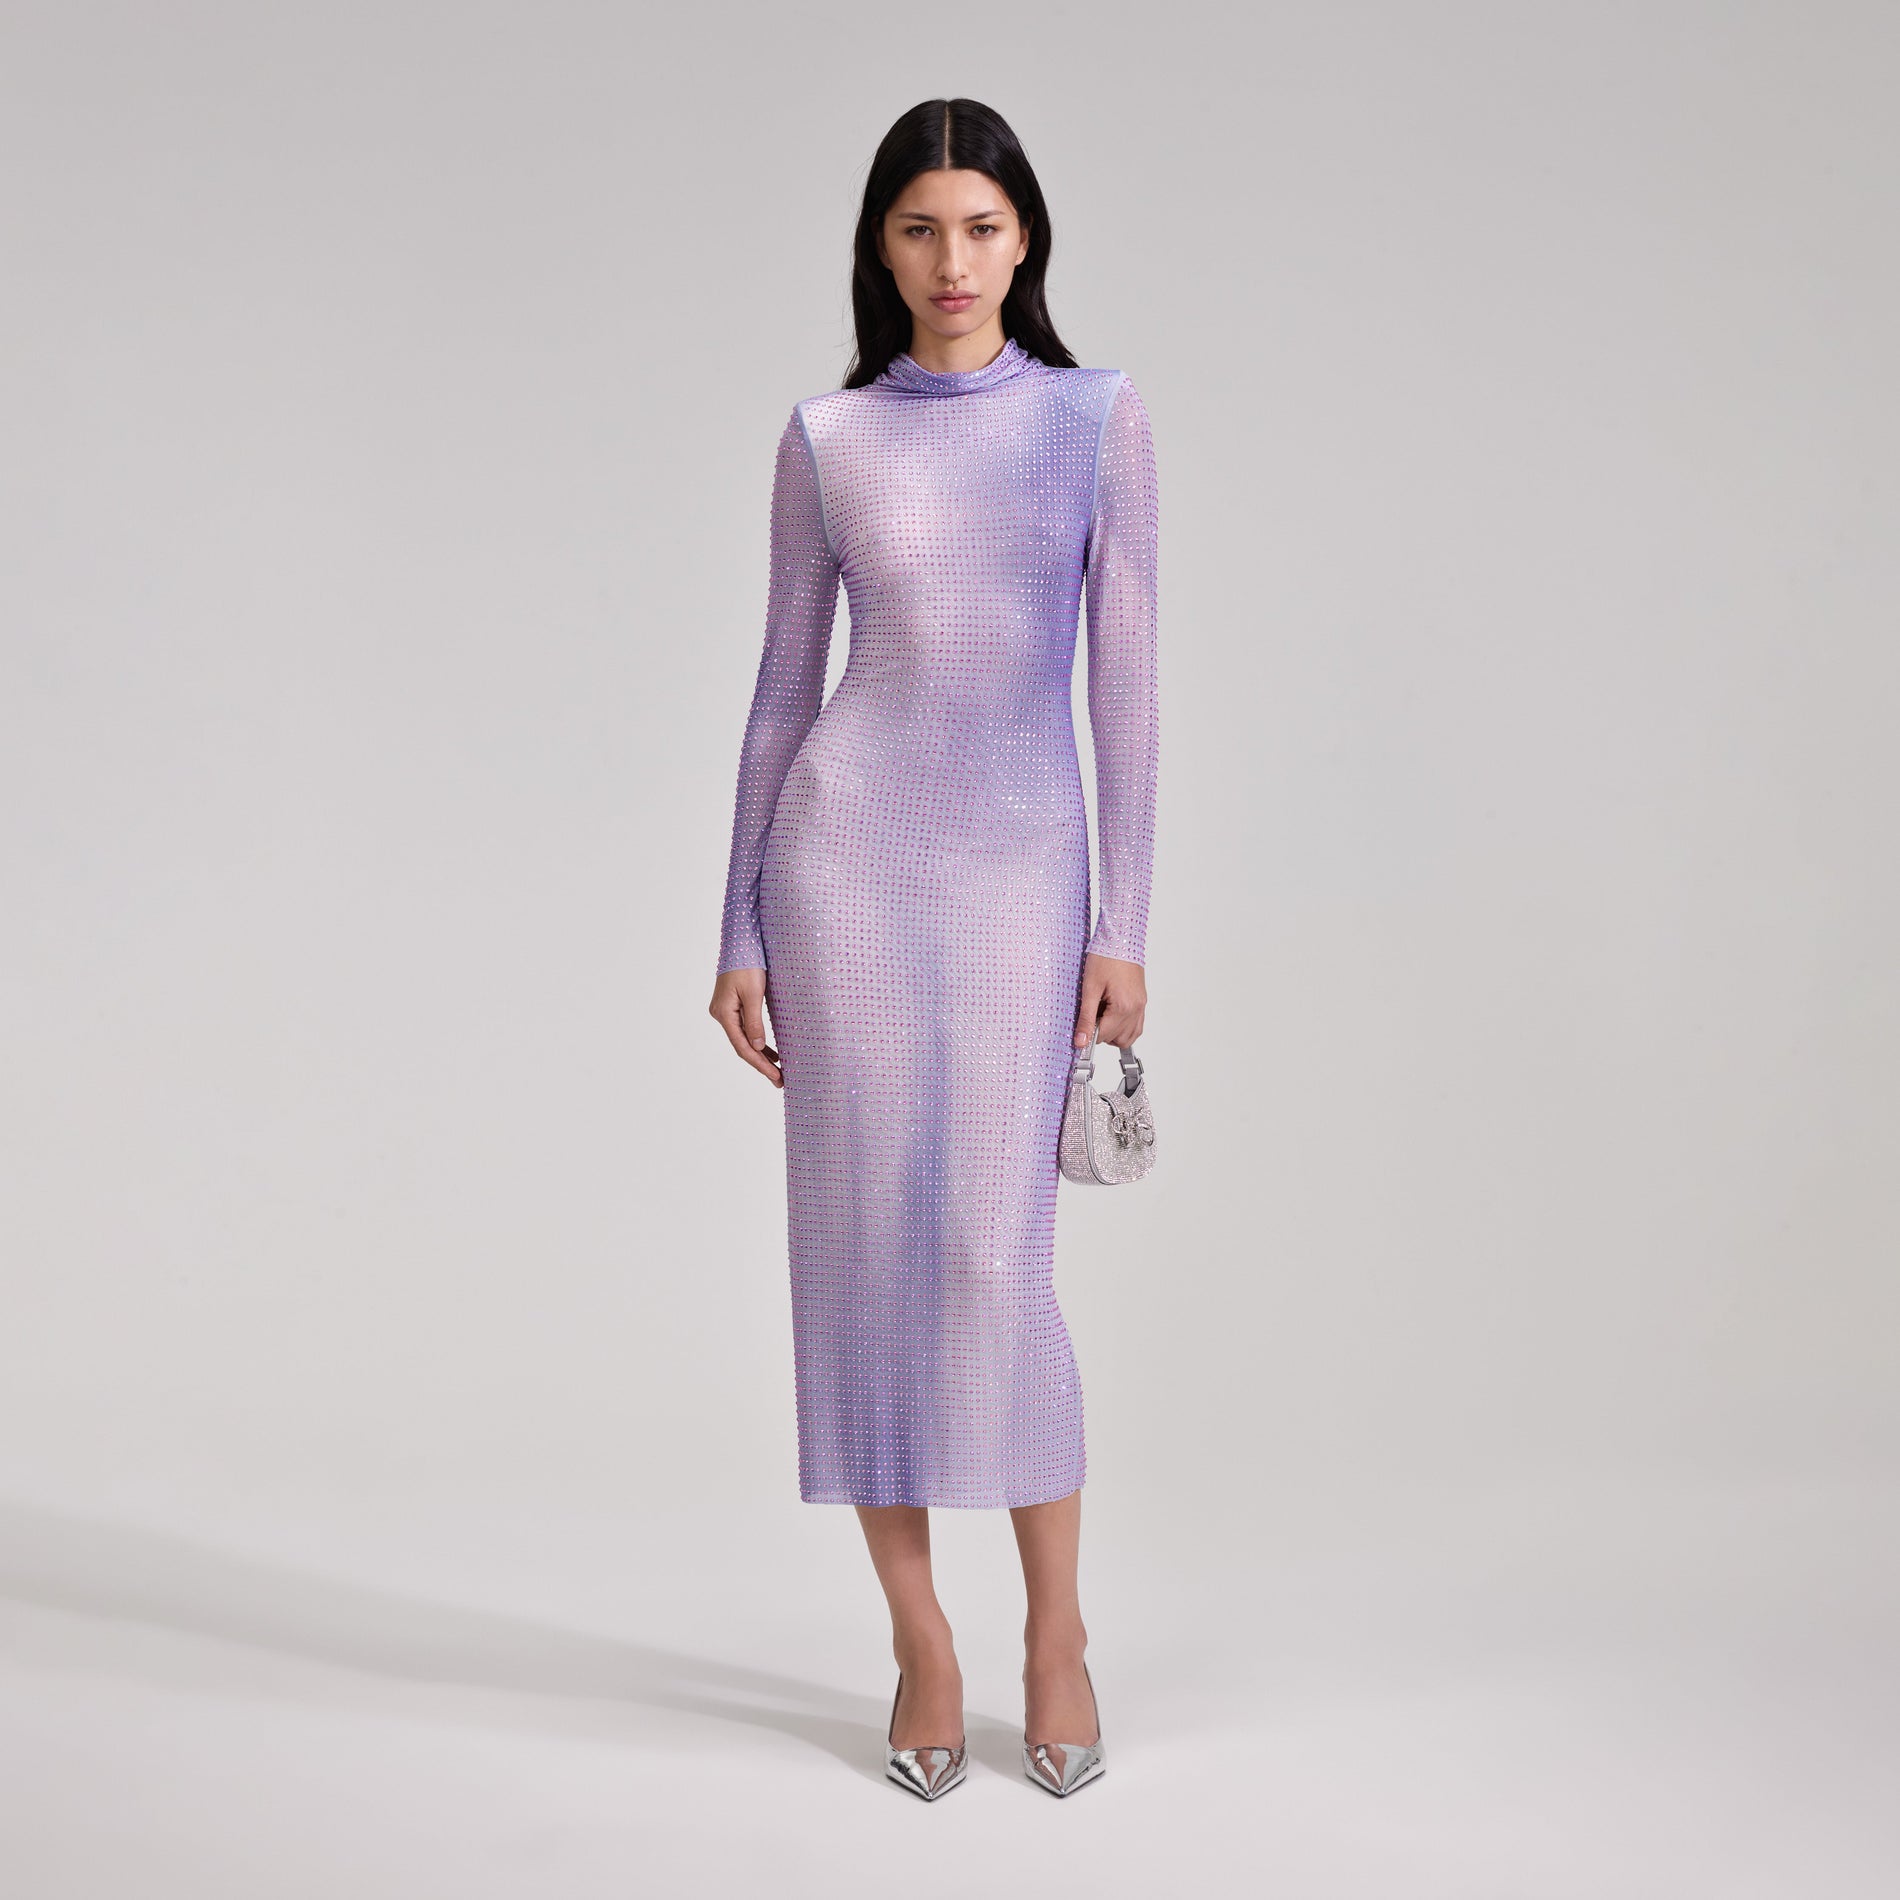 A woman wearing the Lilac Contour Print Midi Dress